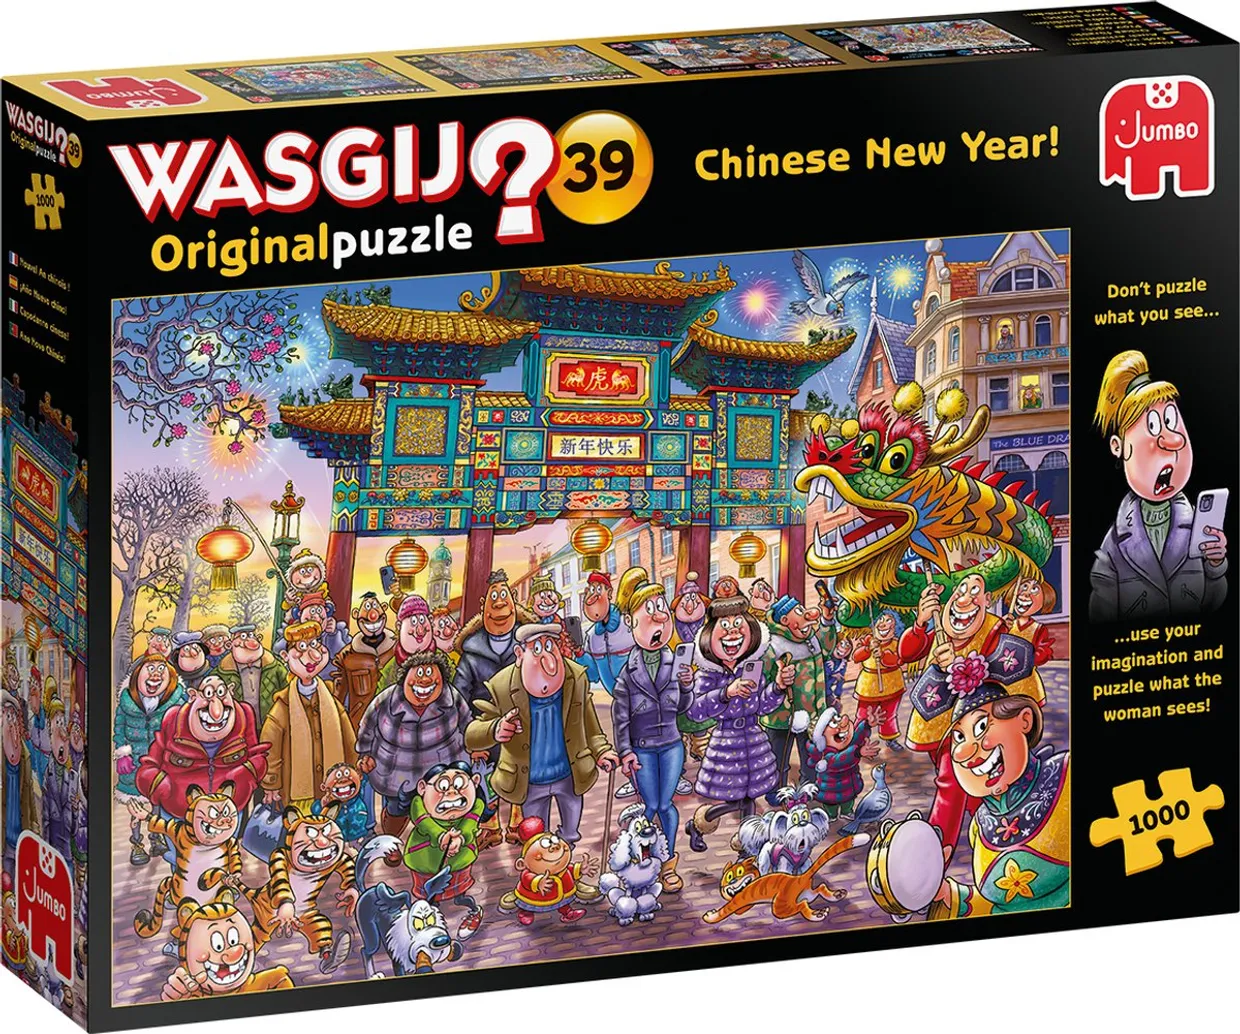 Puzzel - Wasgij Original 39 Chinees Nieuwjaar! (1000)